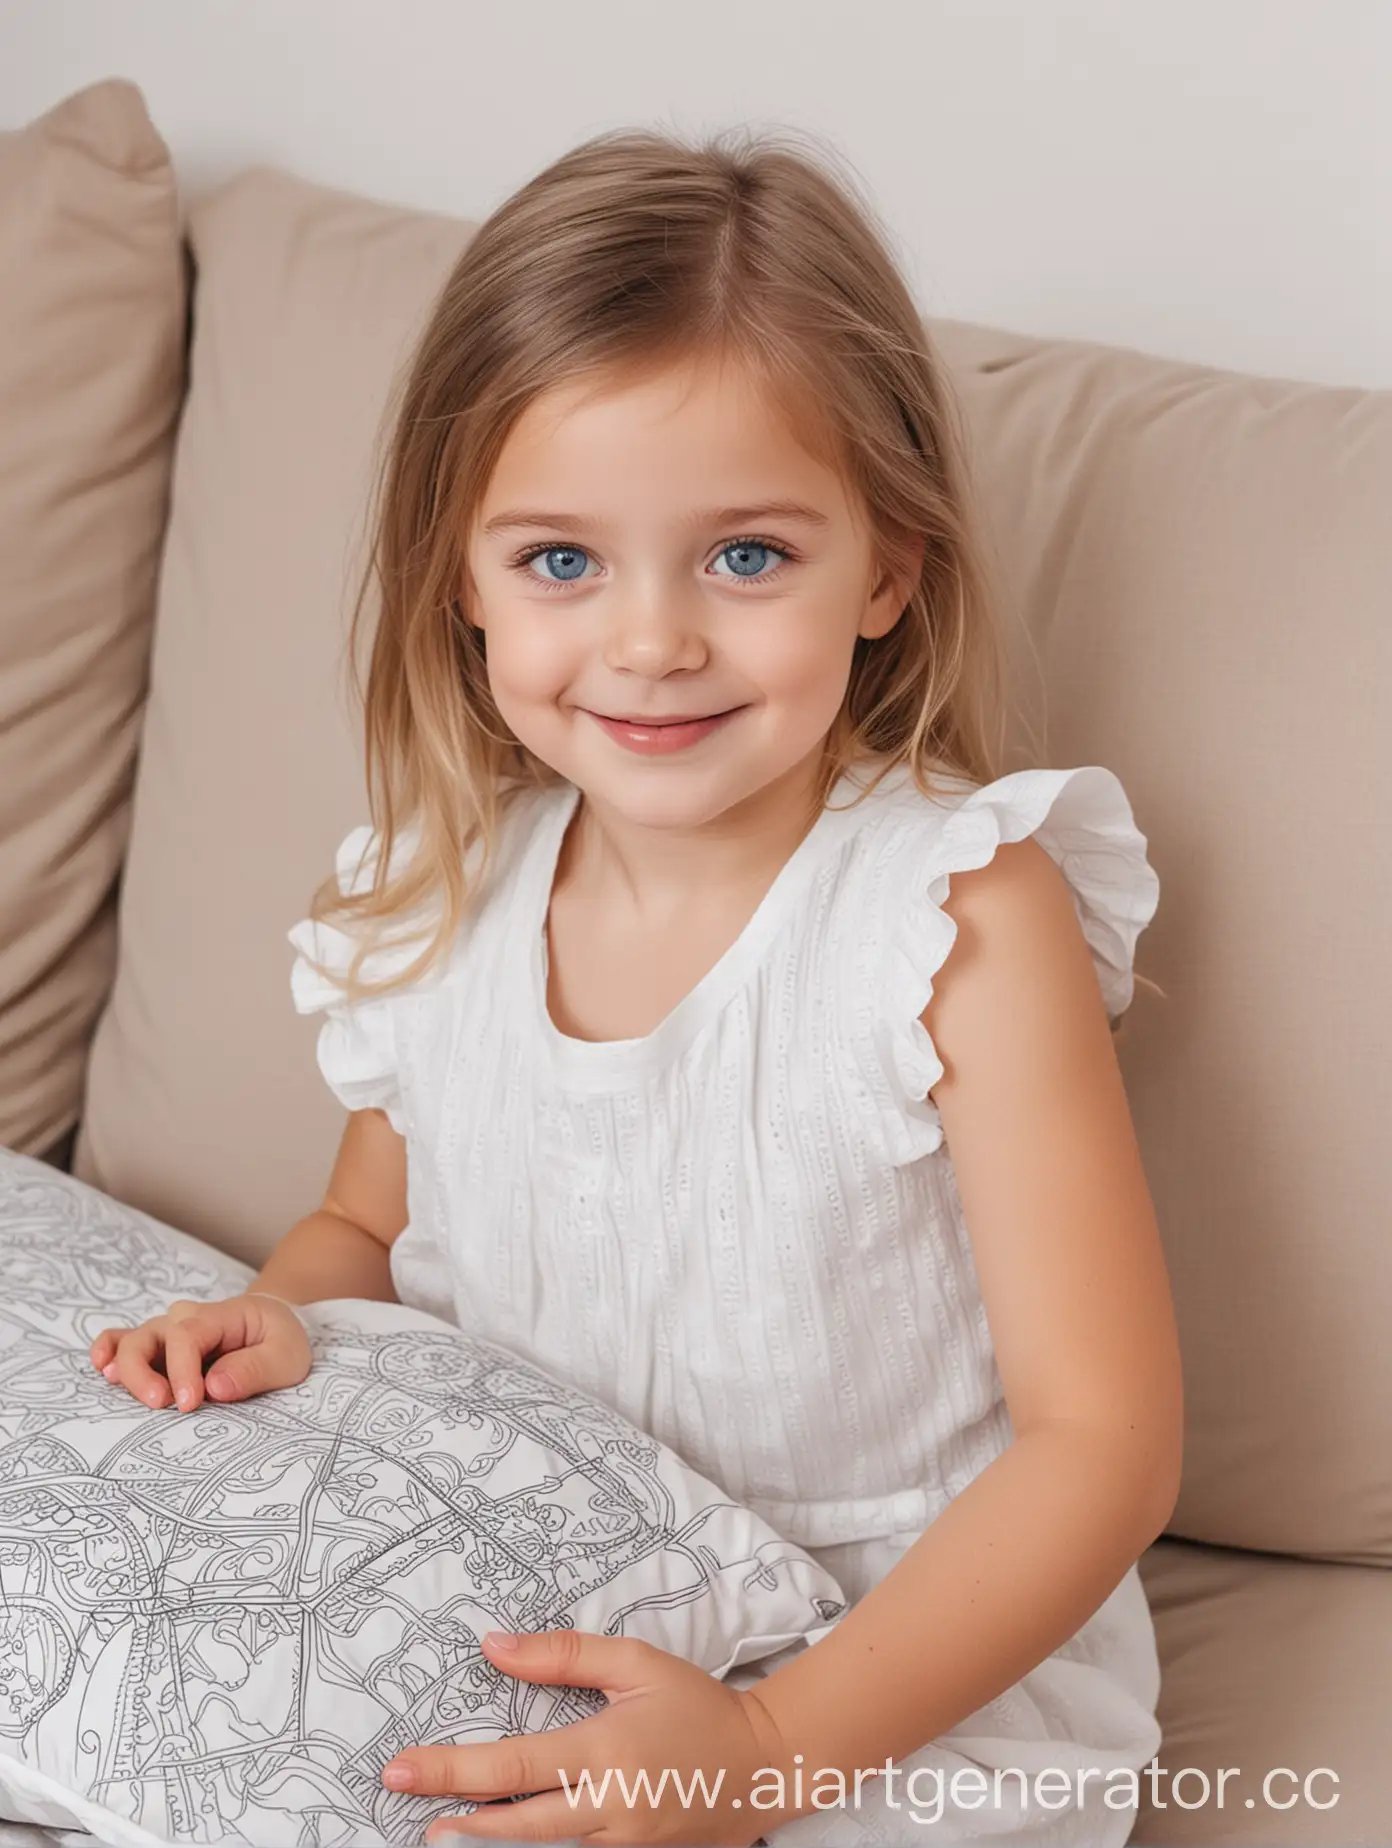 сгенерируй девочку русскую голубые глаза 4 года с улыбкой  сидящую на диване с подушкой раскраской по контуру в руках  